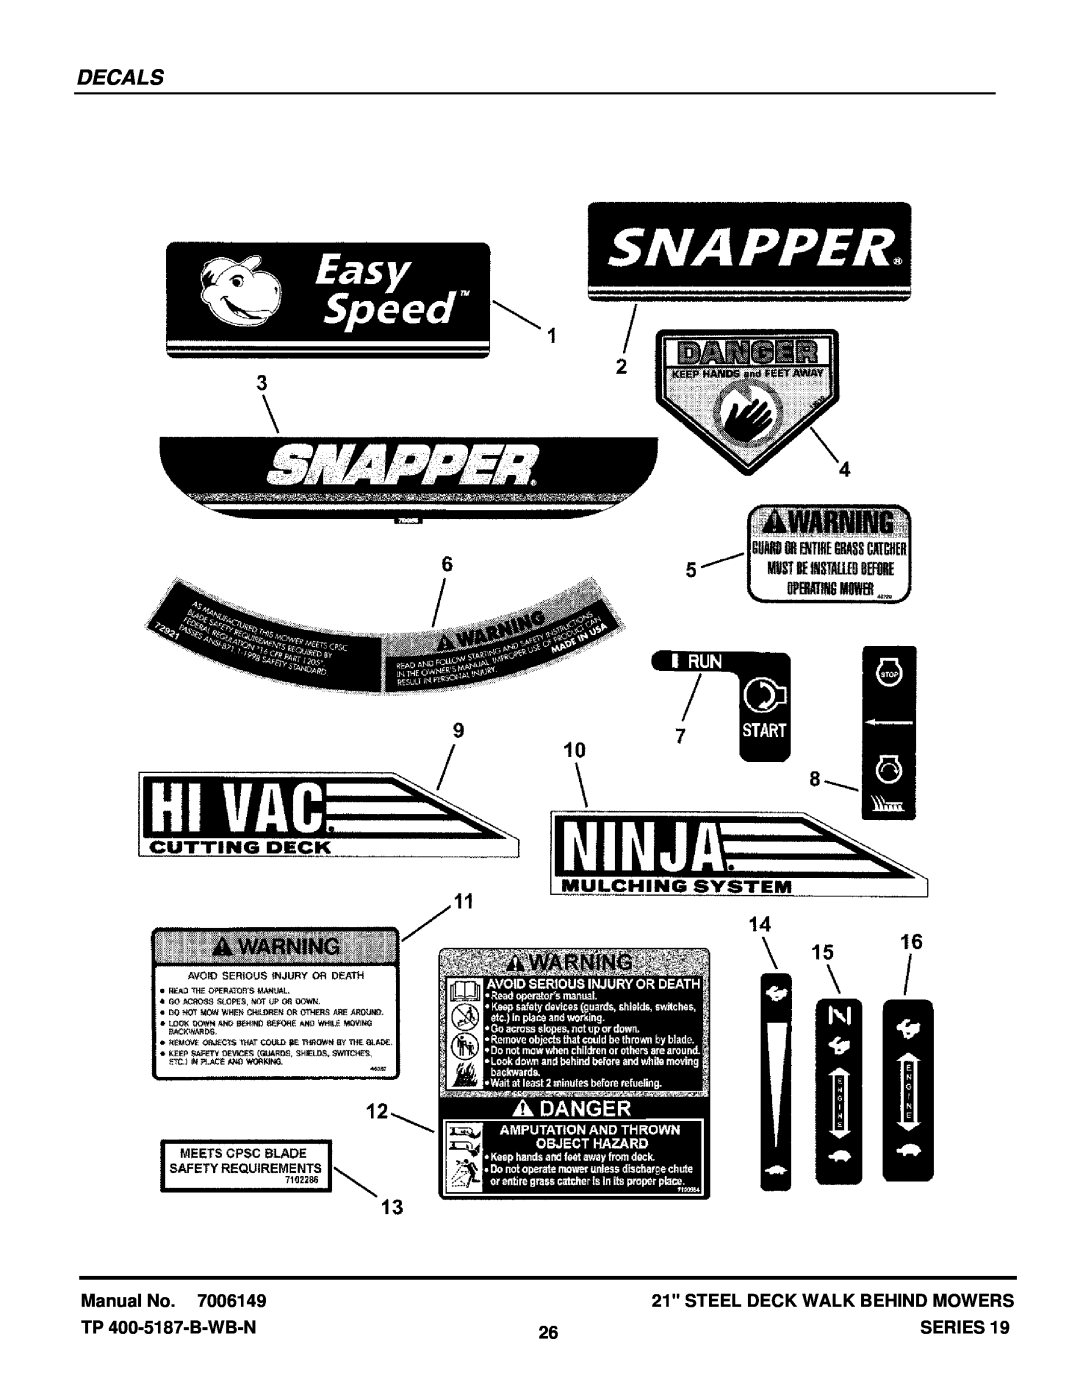 Snapper SERIES 19 manual Decals, Manual No, Steel Deck Walk Behind Mowers, TP 400-5187-B-WB-N, Series 